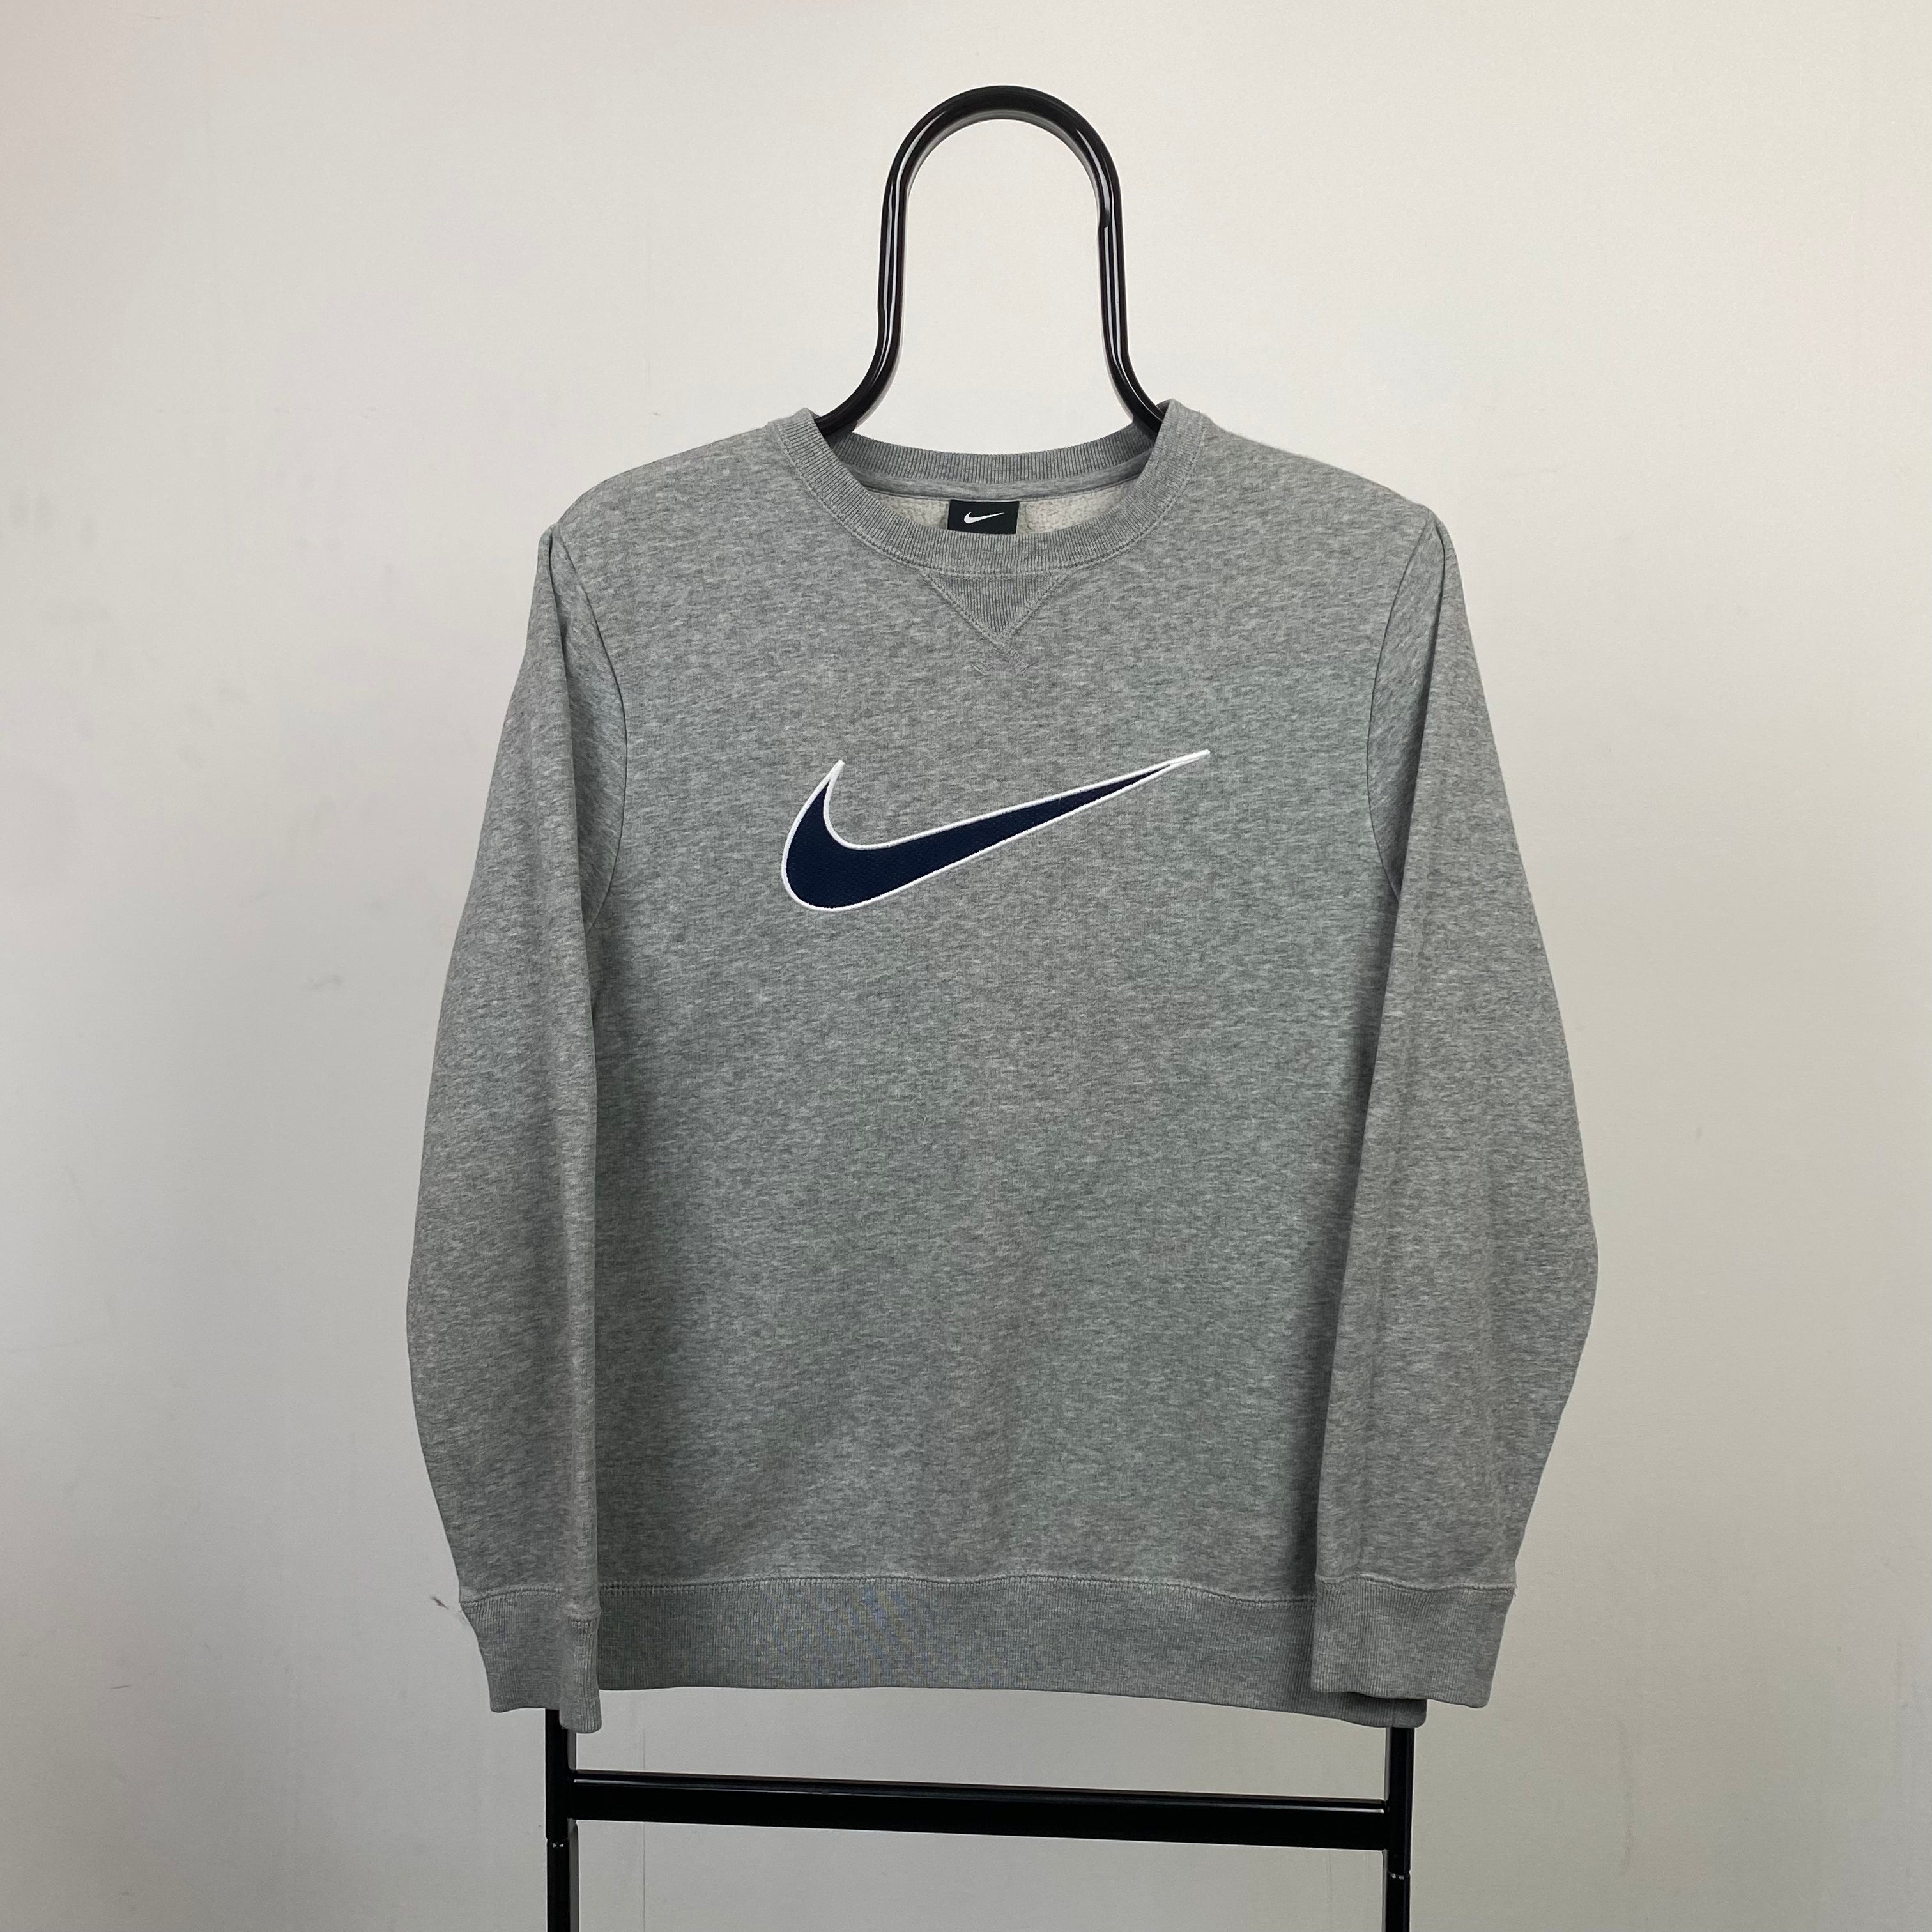 90s Nike Swoosh Sweatshirt Grey XS